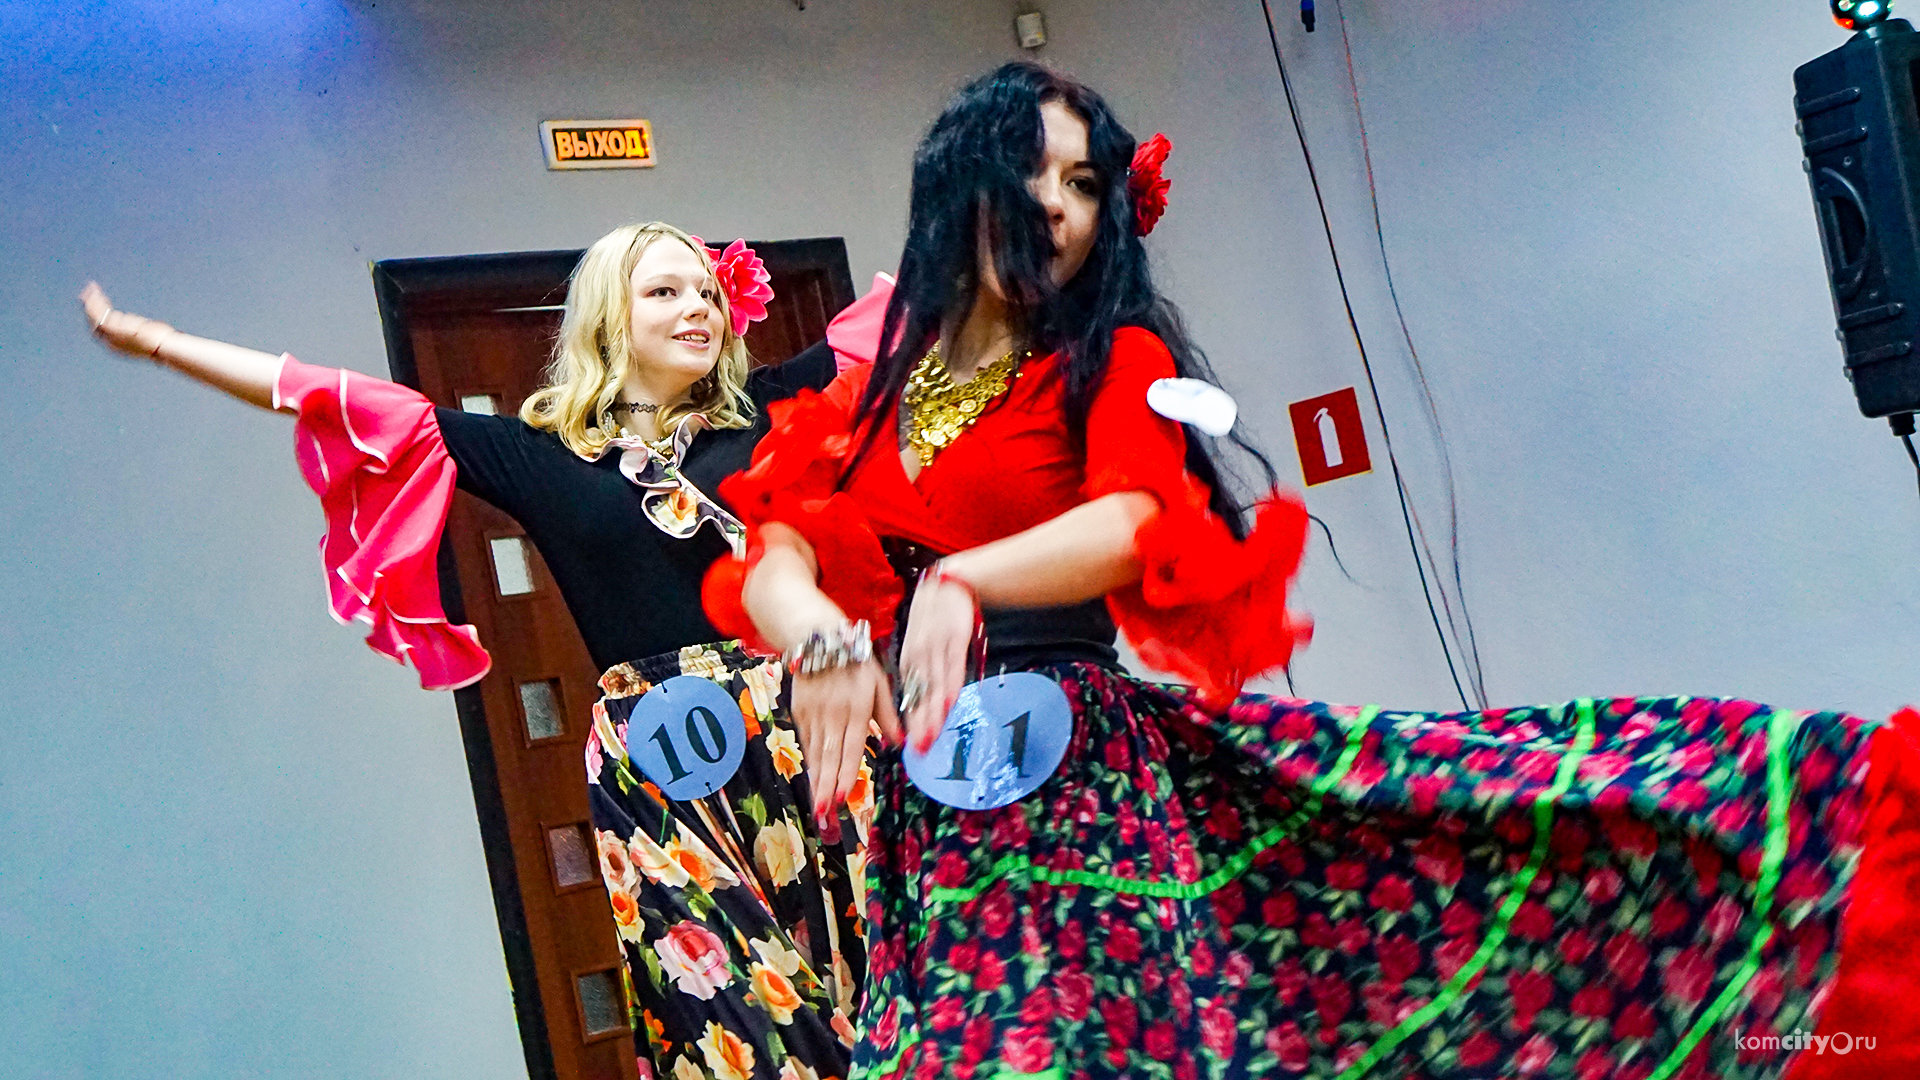 Конкурс цыганского танца впервые провели в Комсомольске